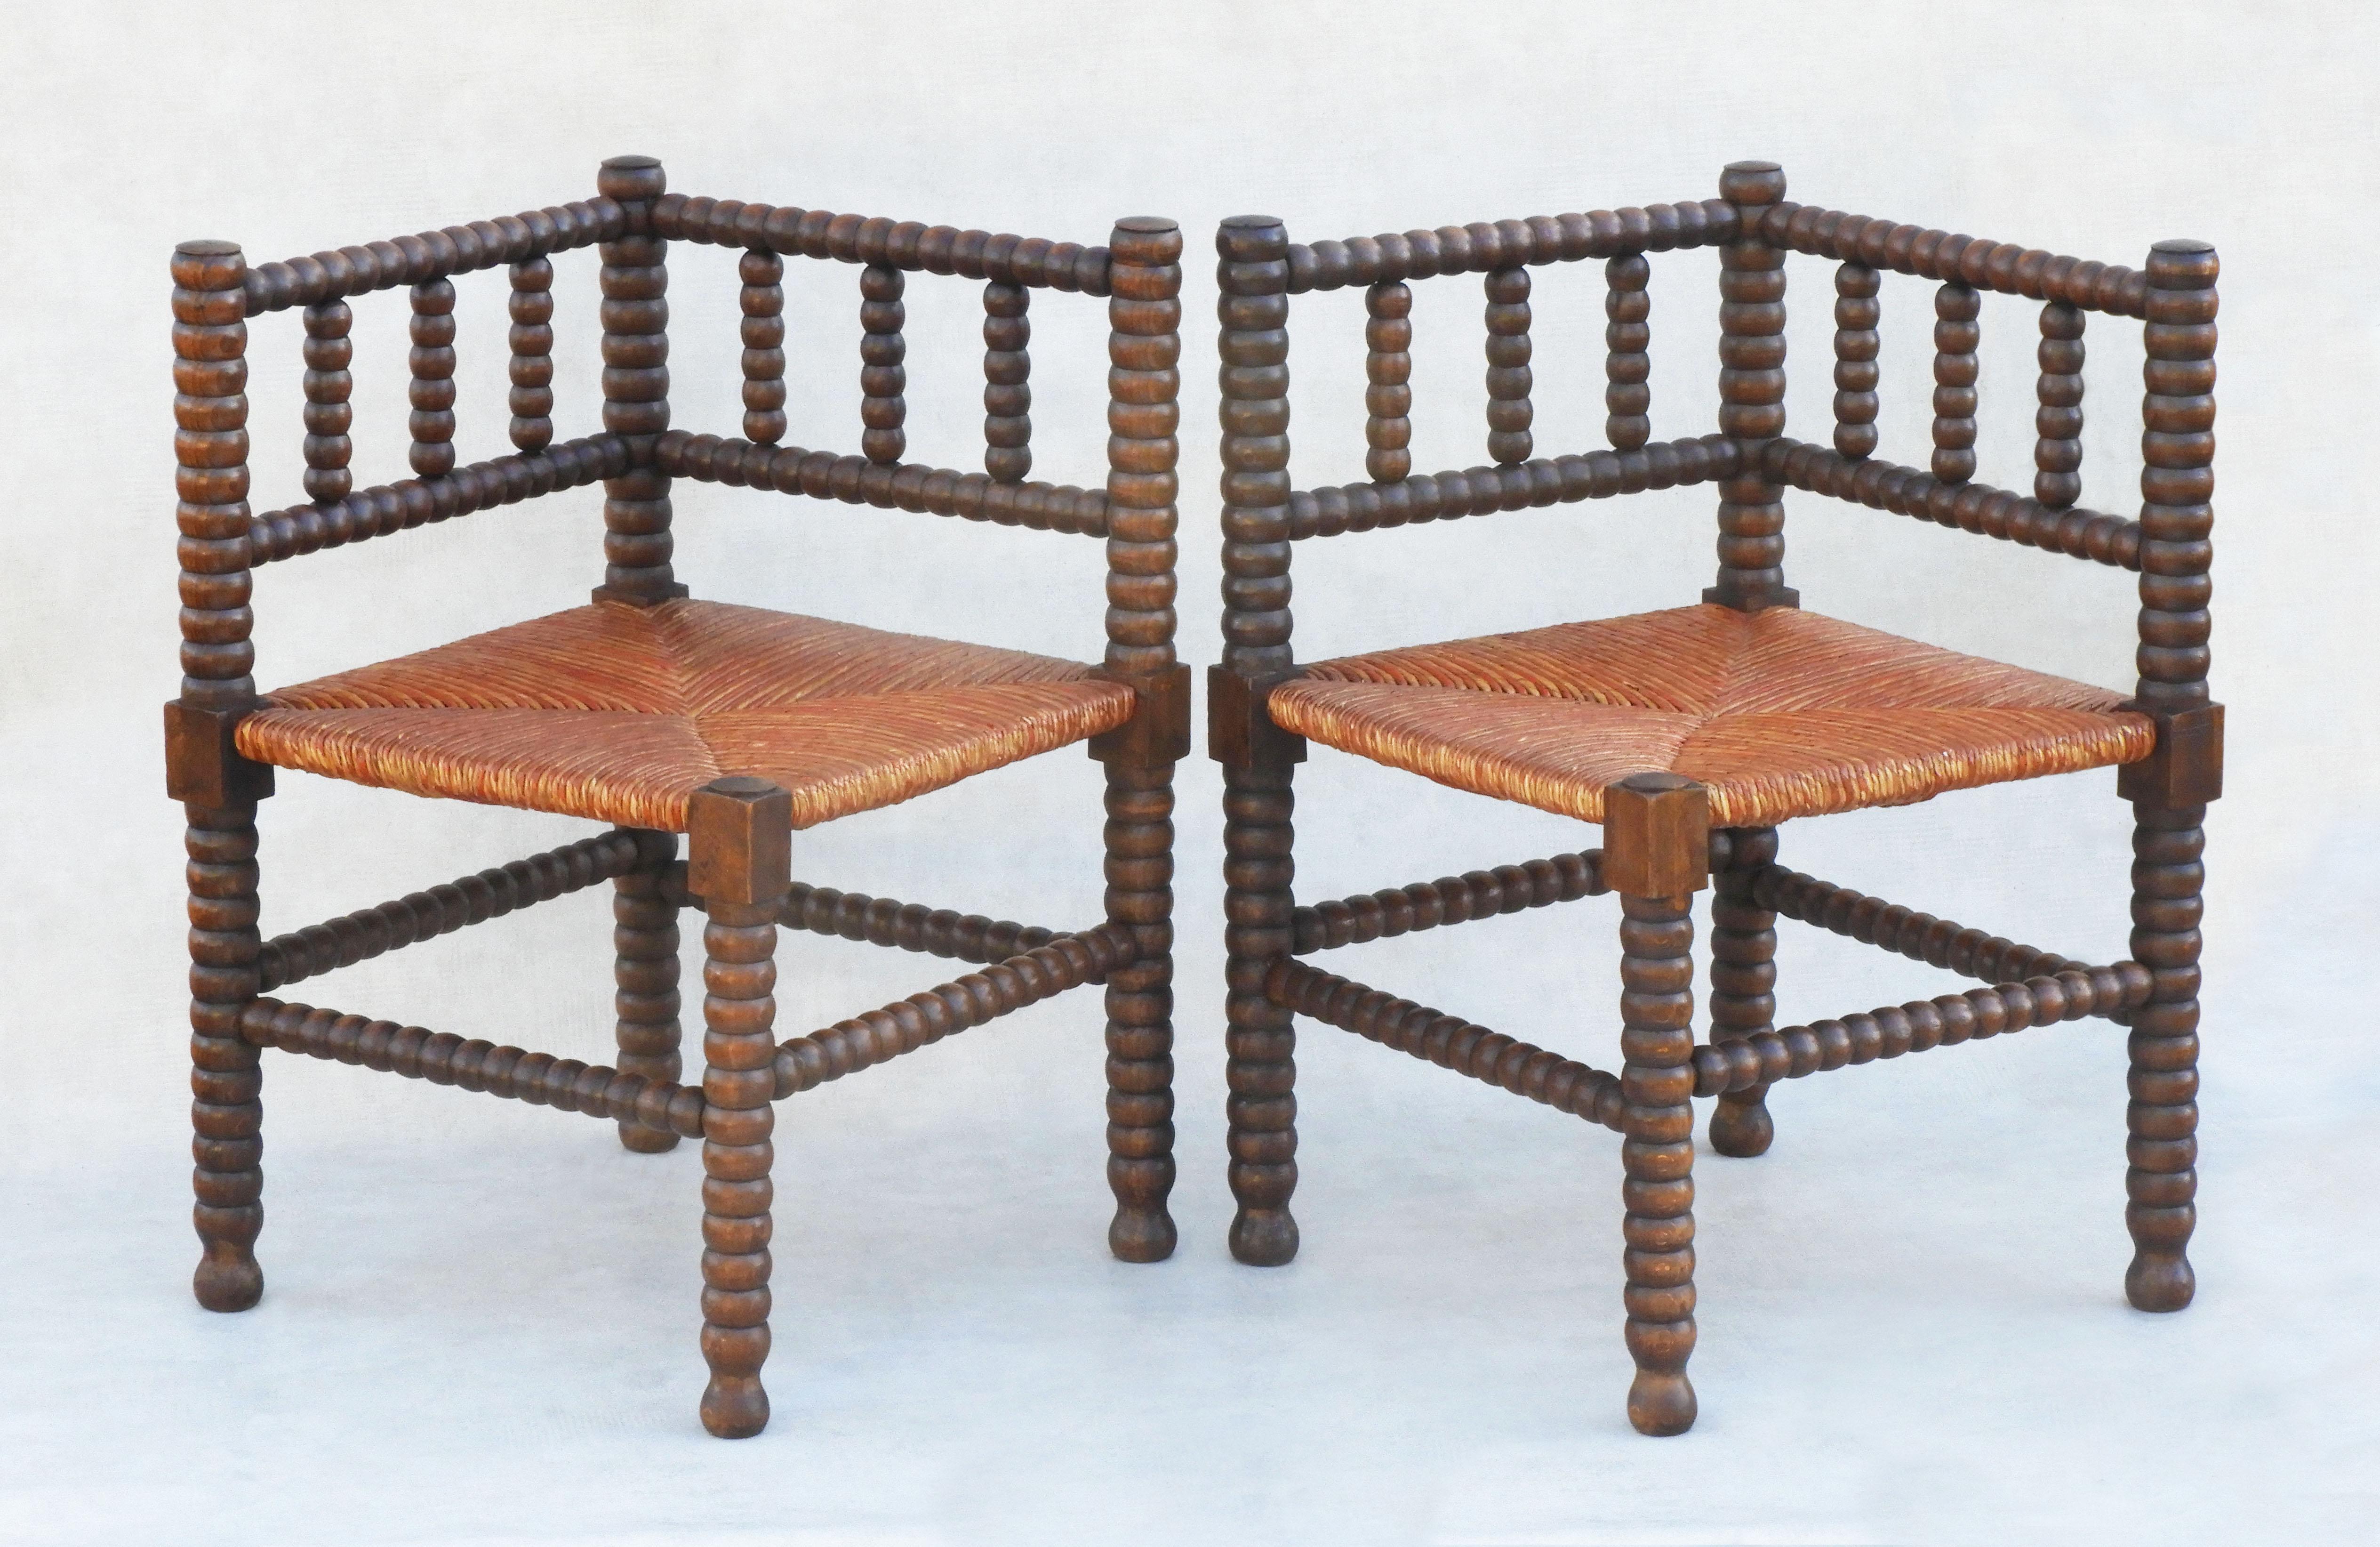 Provincial français Paire de chaises d'angle provinciales françaises en bois de broussin avec assise en jonc, vers 1900